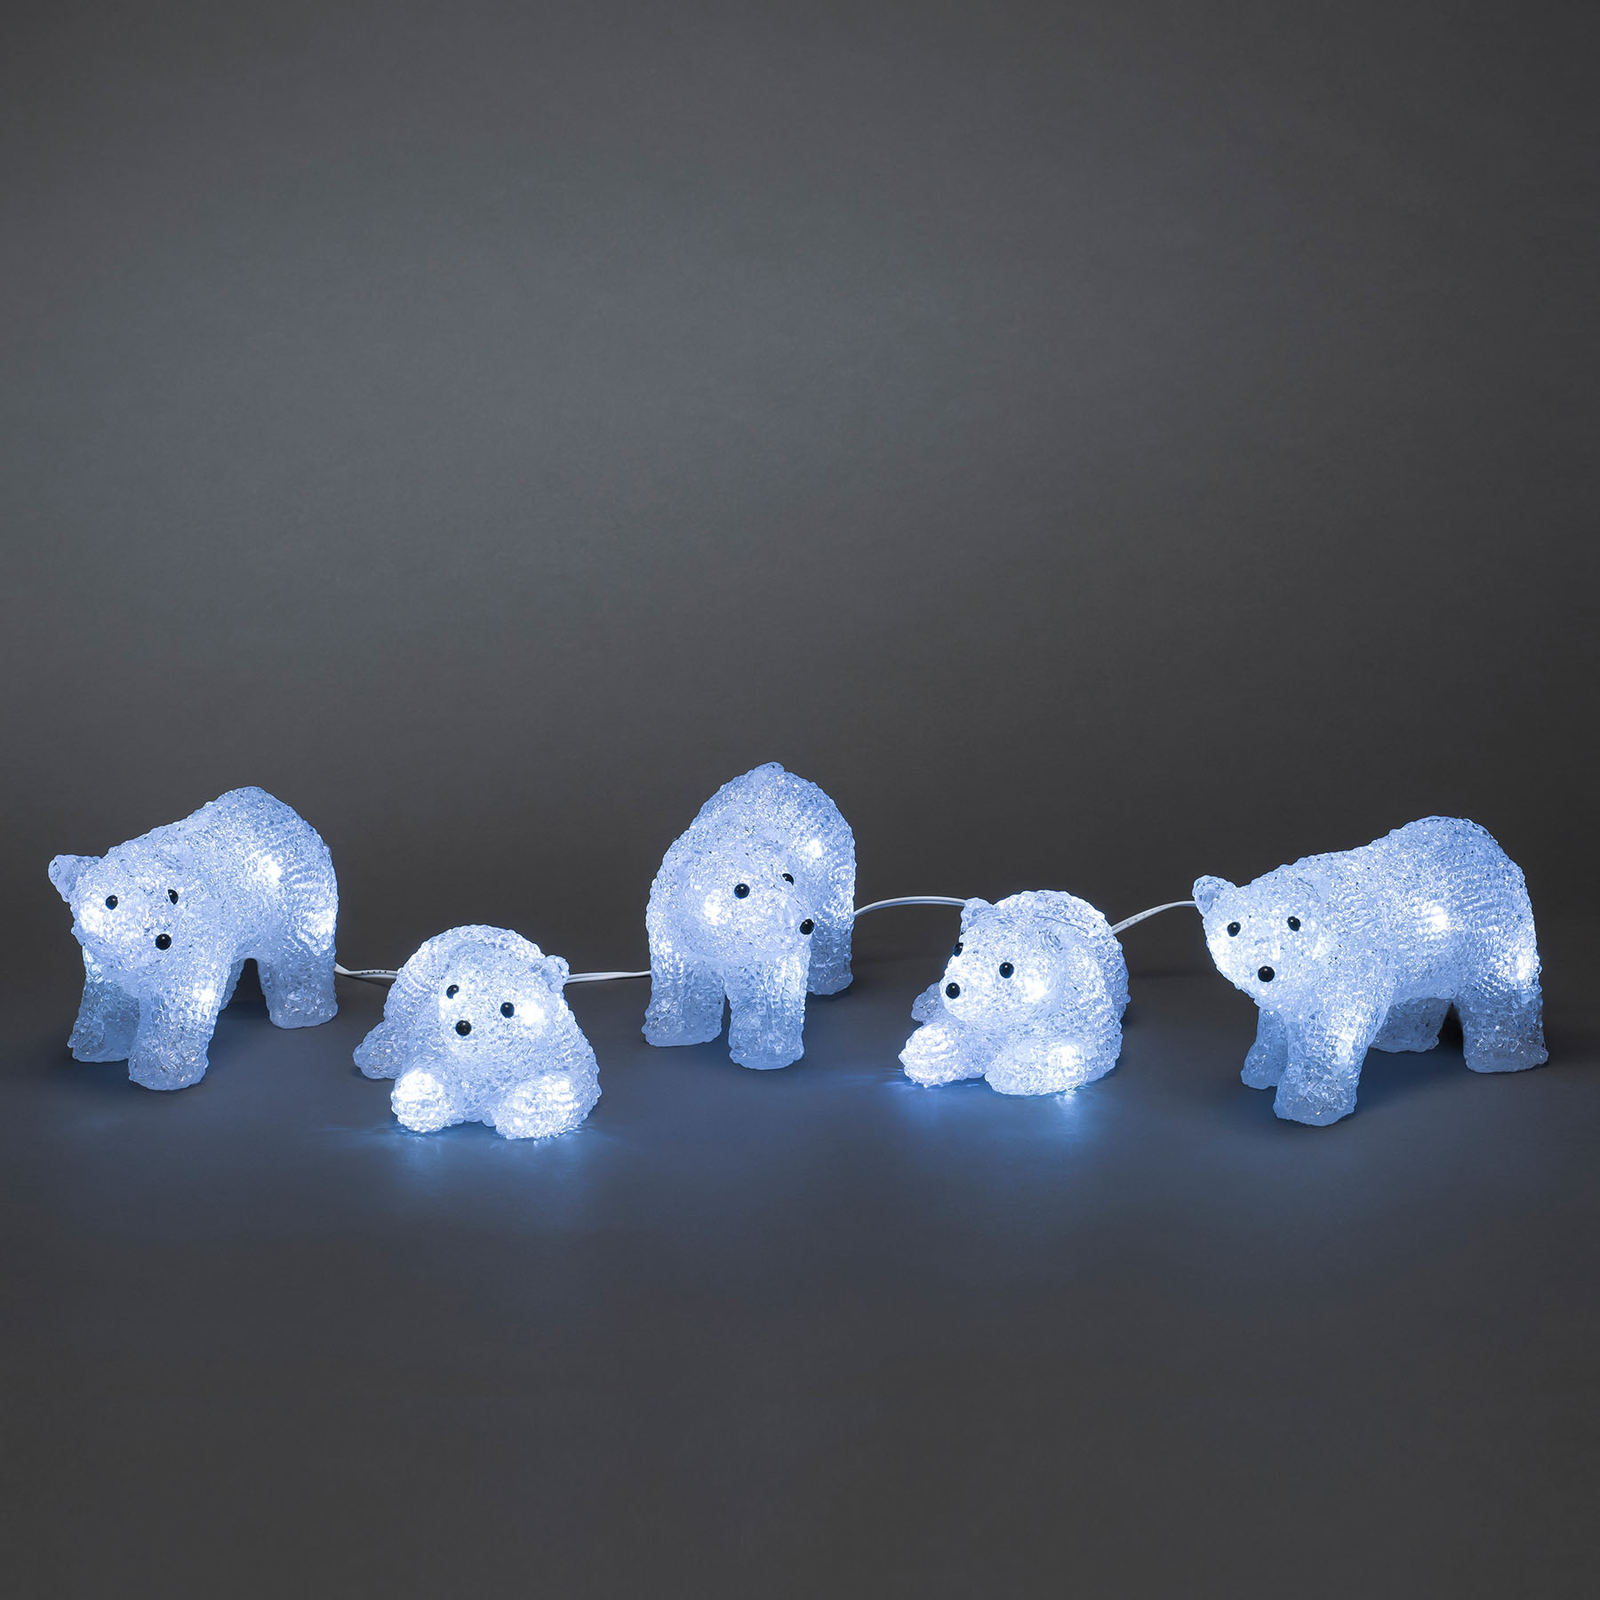 LED-Leuchtfiguren Polarbären für außen, 5er-Set